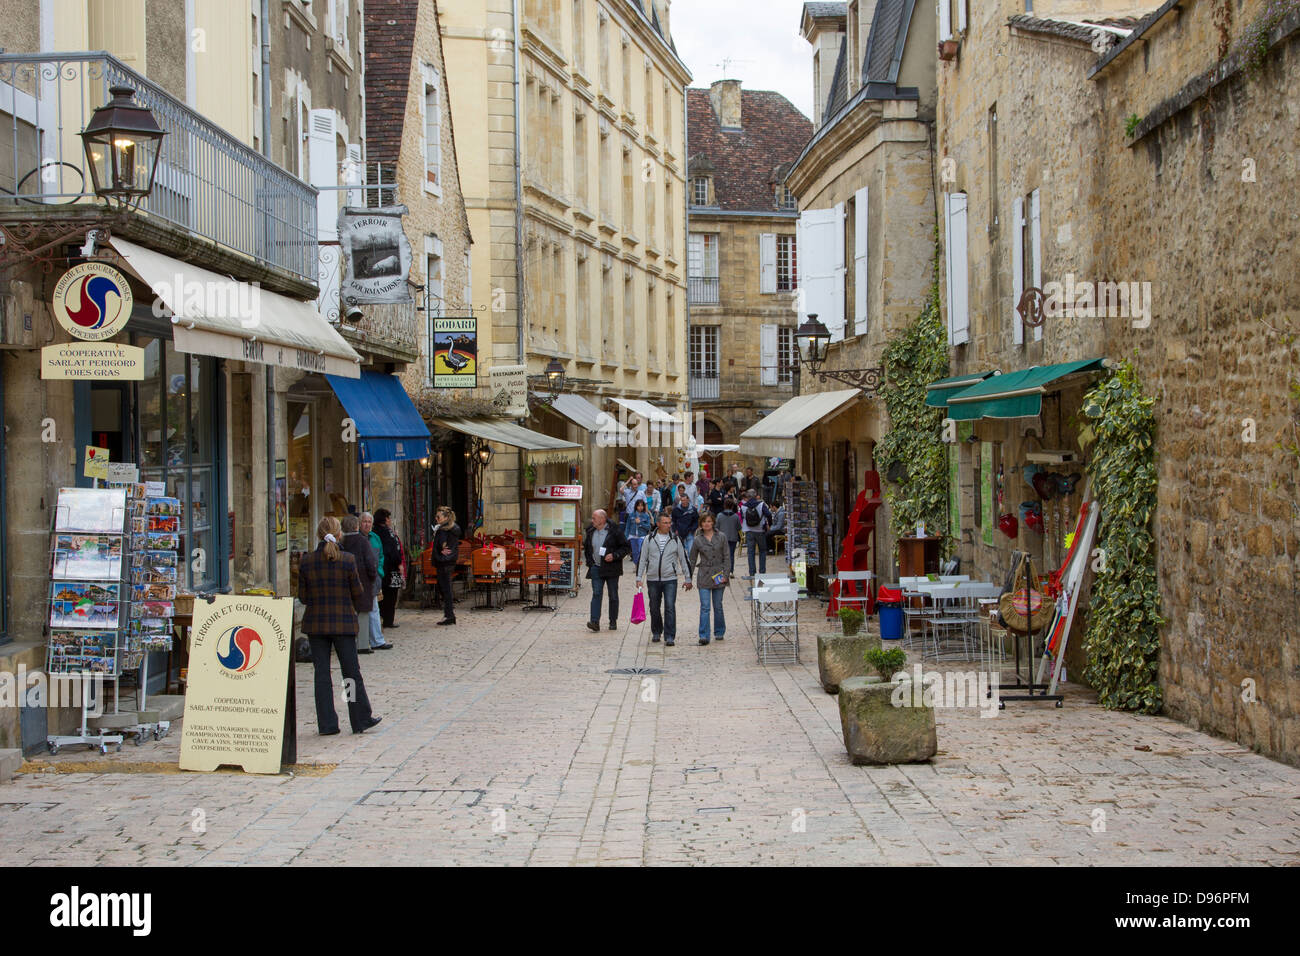 Les touristes flâner parmi les boutiques logées dans des bâtiments de grès médiévale dans la charmante ville de Sarlat, Dordogne France Banque D'Images